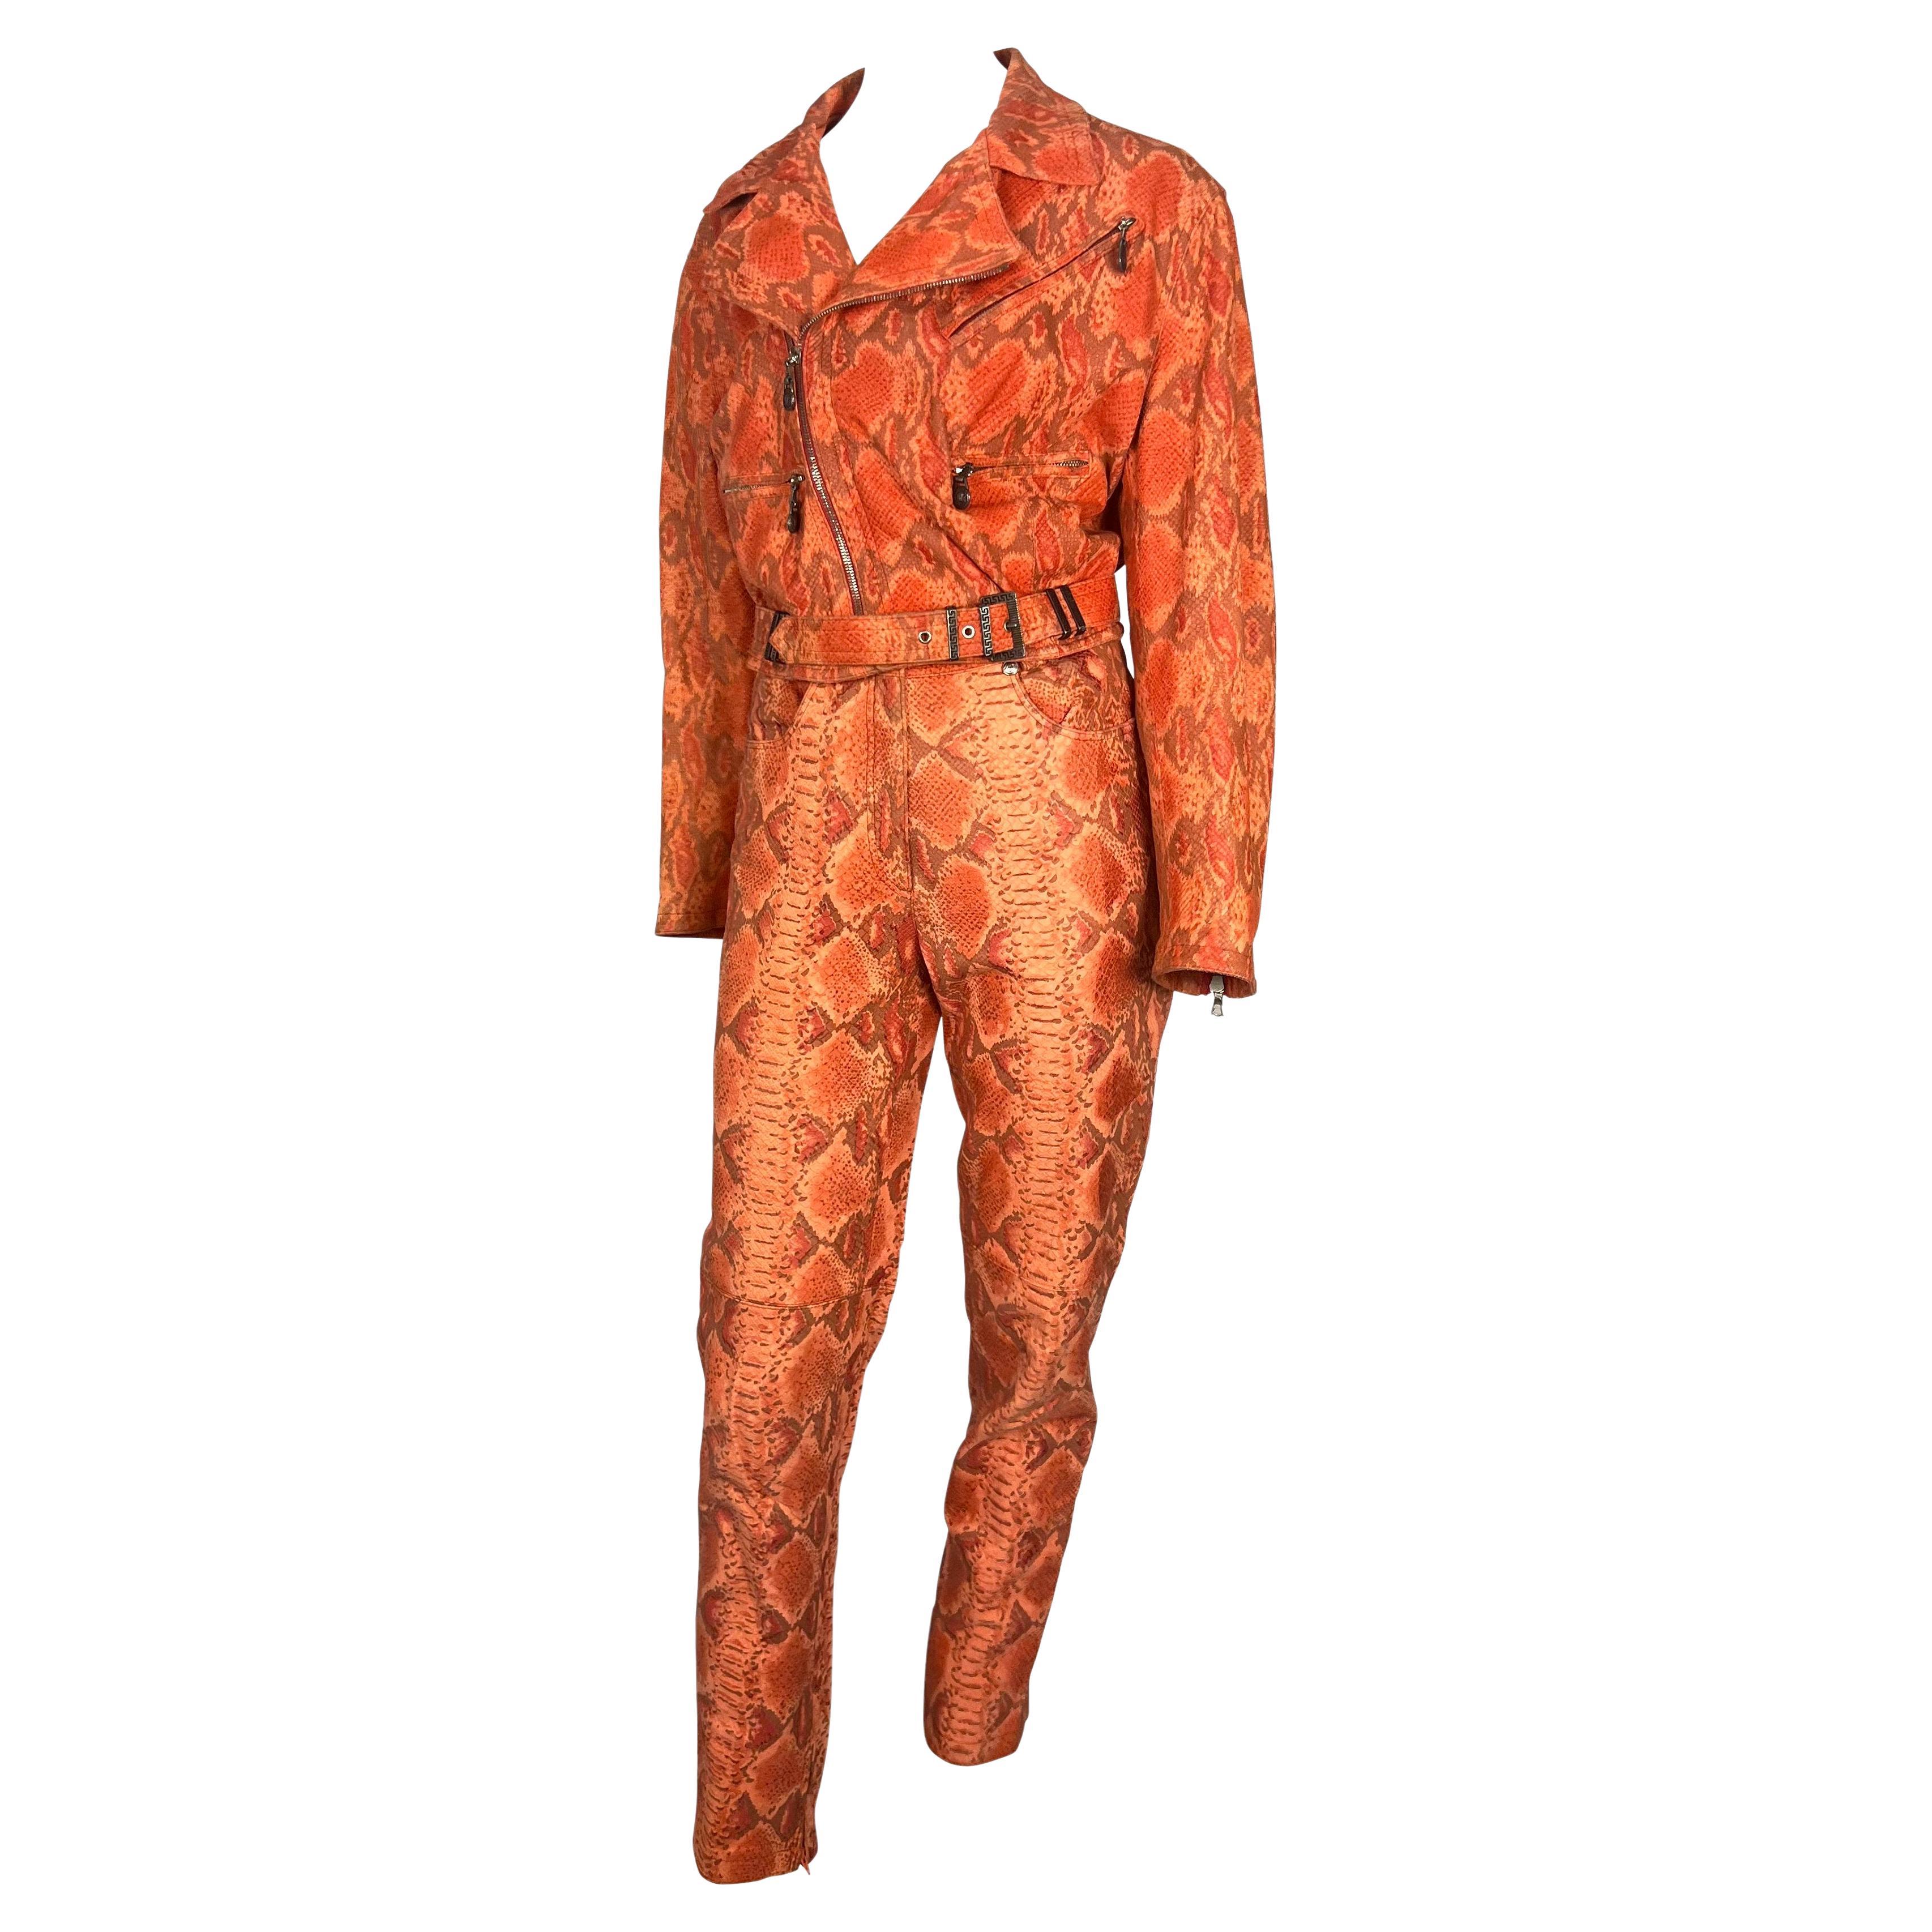 Voici un fabuleux ensemble pantalon en cuir gaufré peau de serpent, conçu par Gianni Versace pour sa collection automne/hiver 1994. La veste de cet ensemble a été présentée en plusieurs couleurs sur les podiums de la saison. Cet ensemble rare est